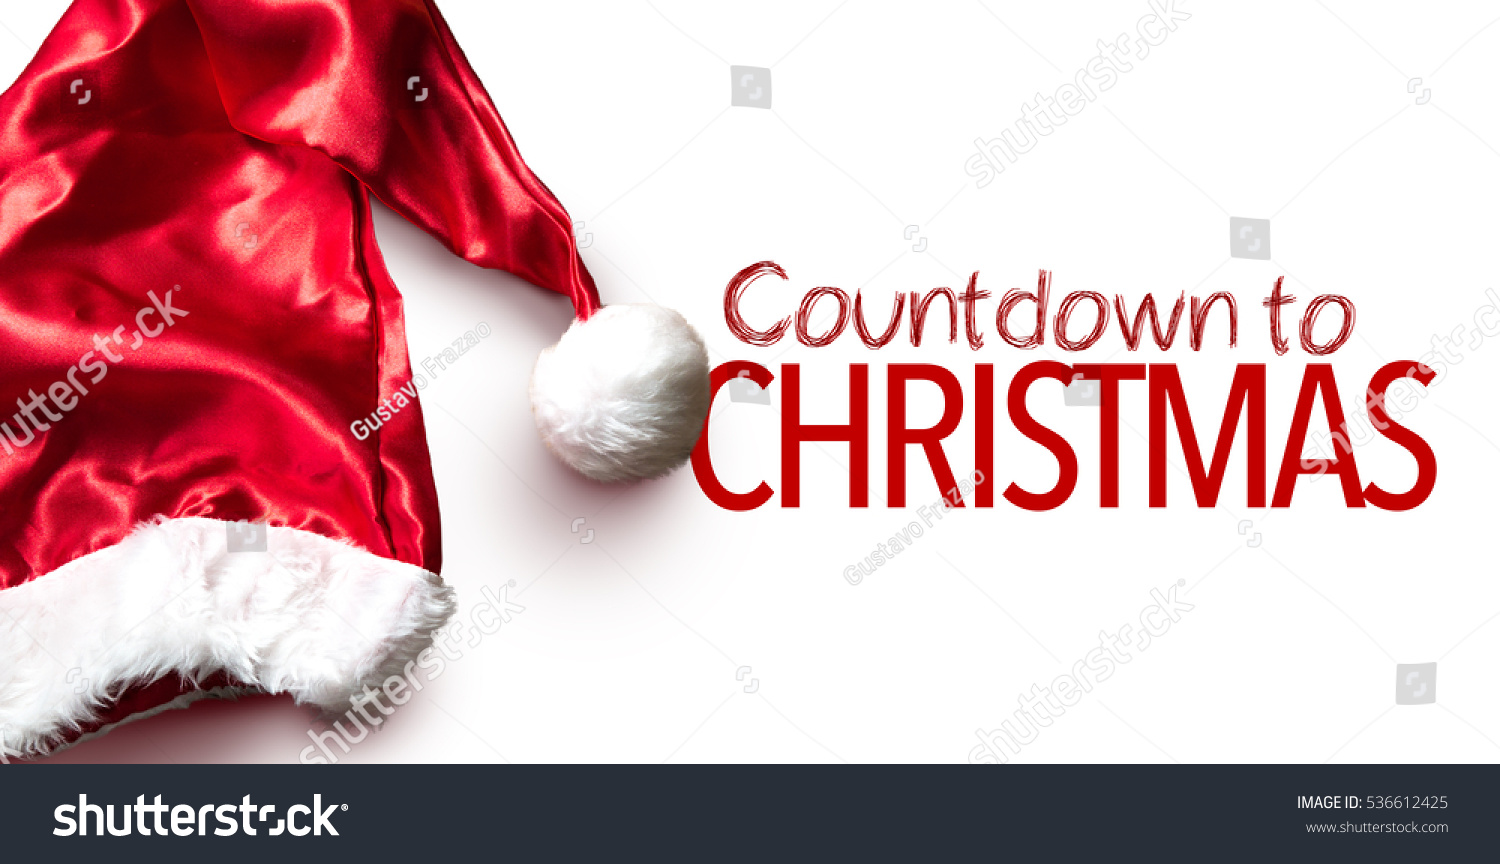 Countdown to Christmas #536612425